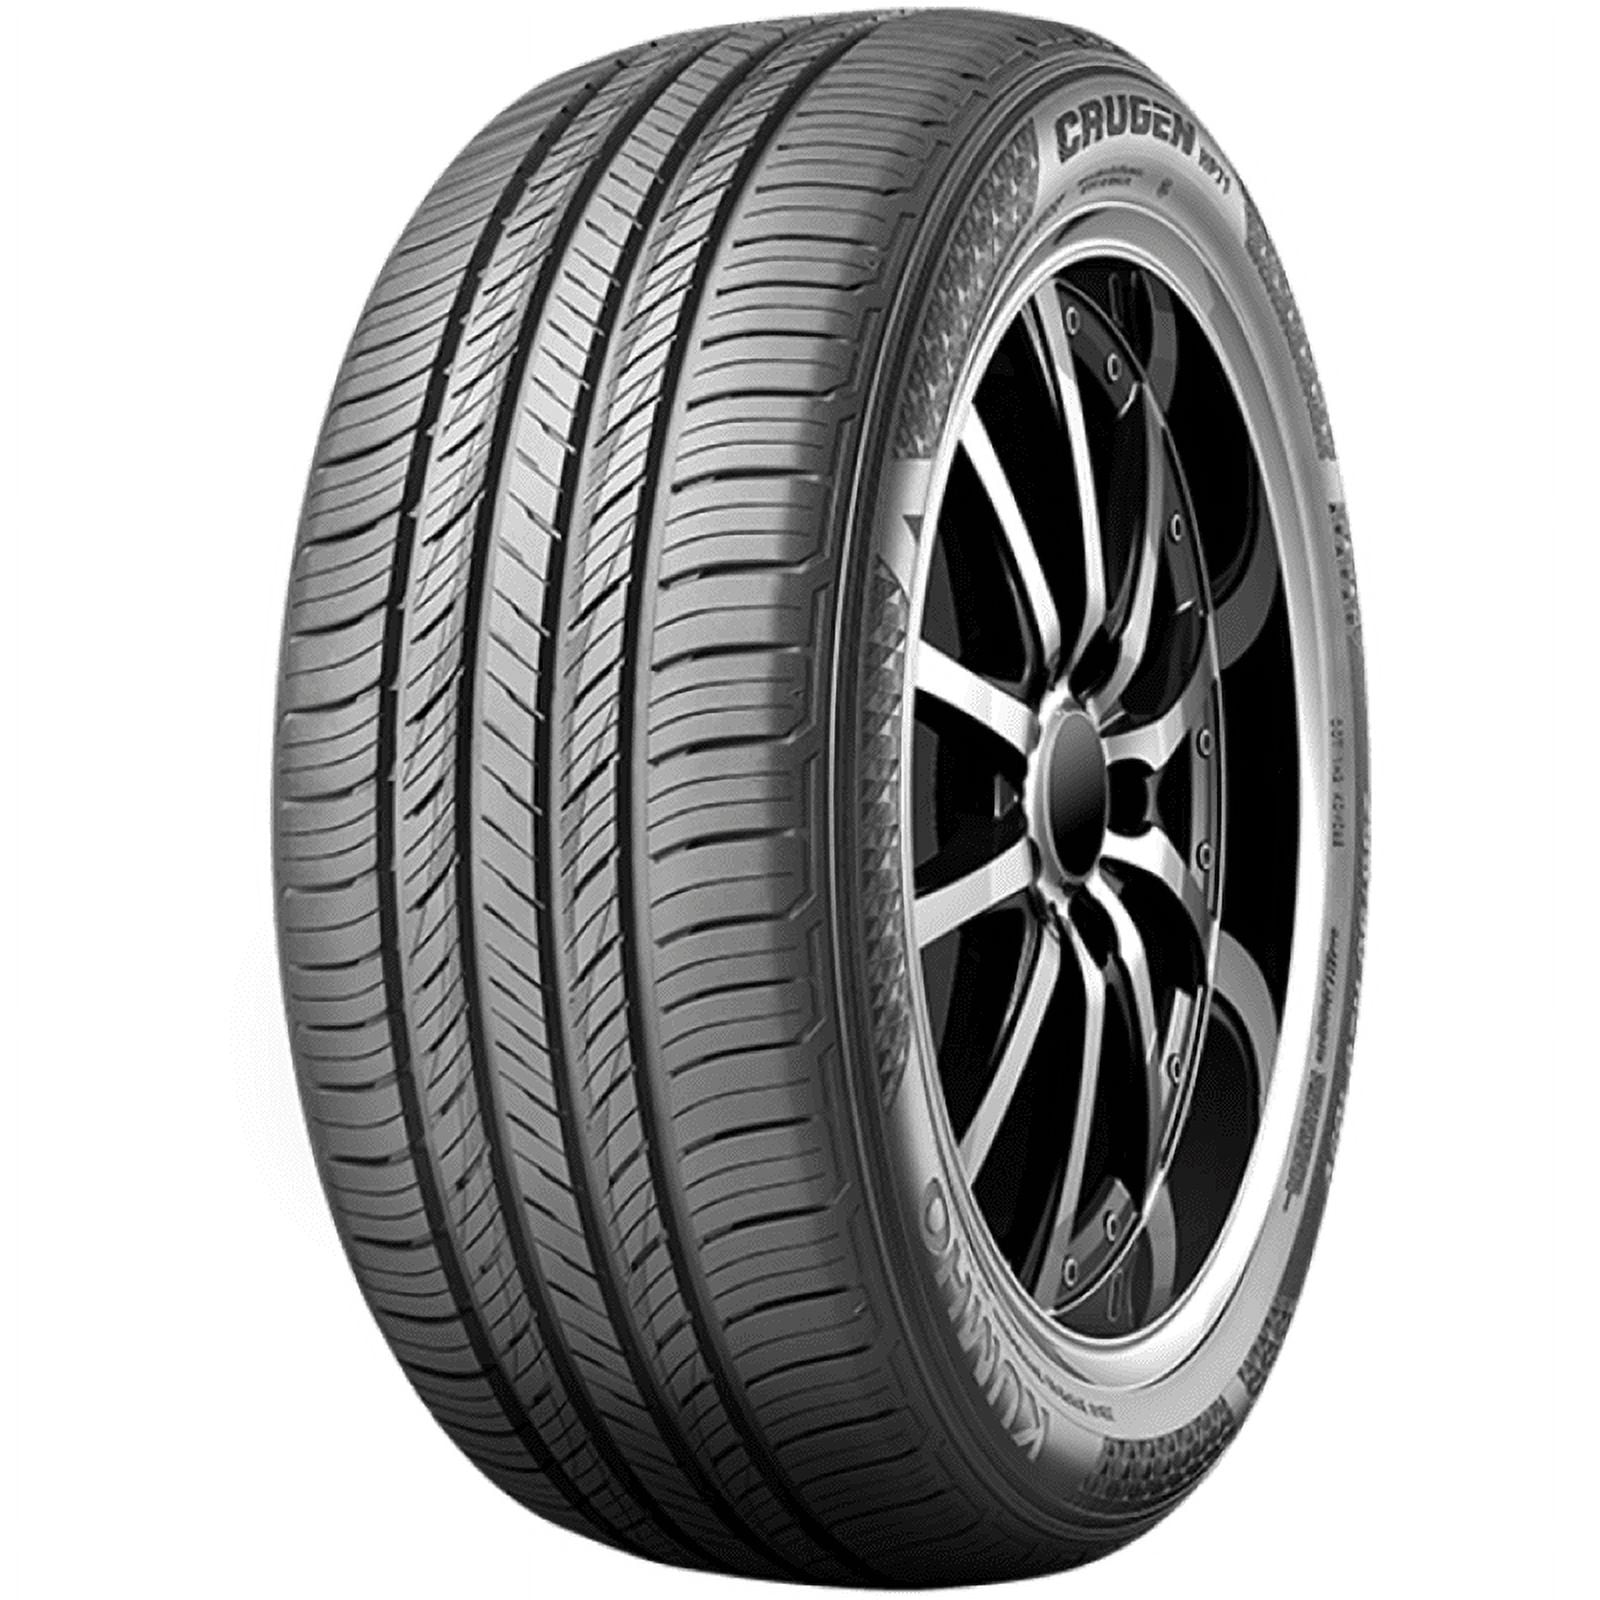 Kumho Crugen HP71 All-Season Tire 101V - 235/55R19